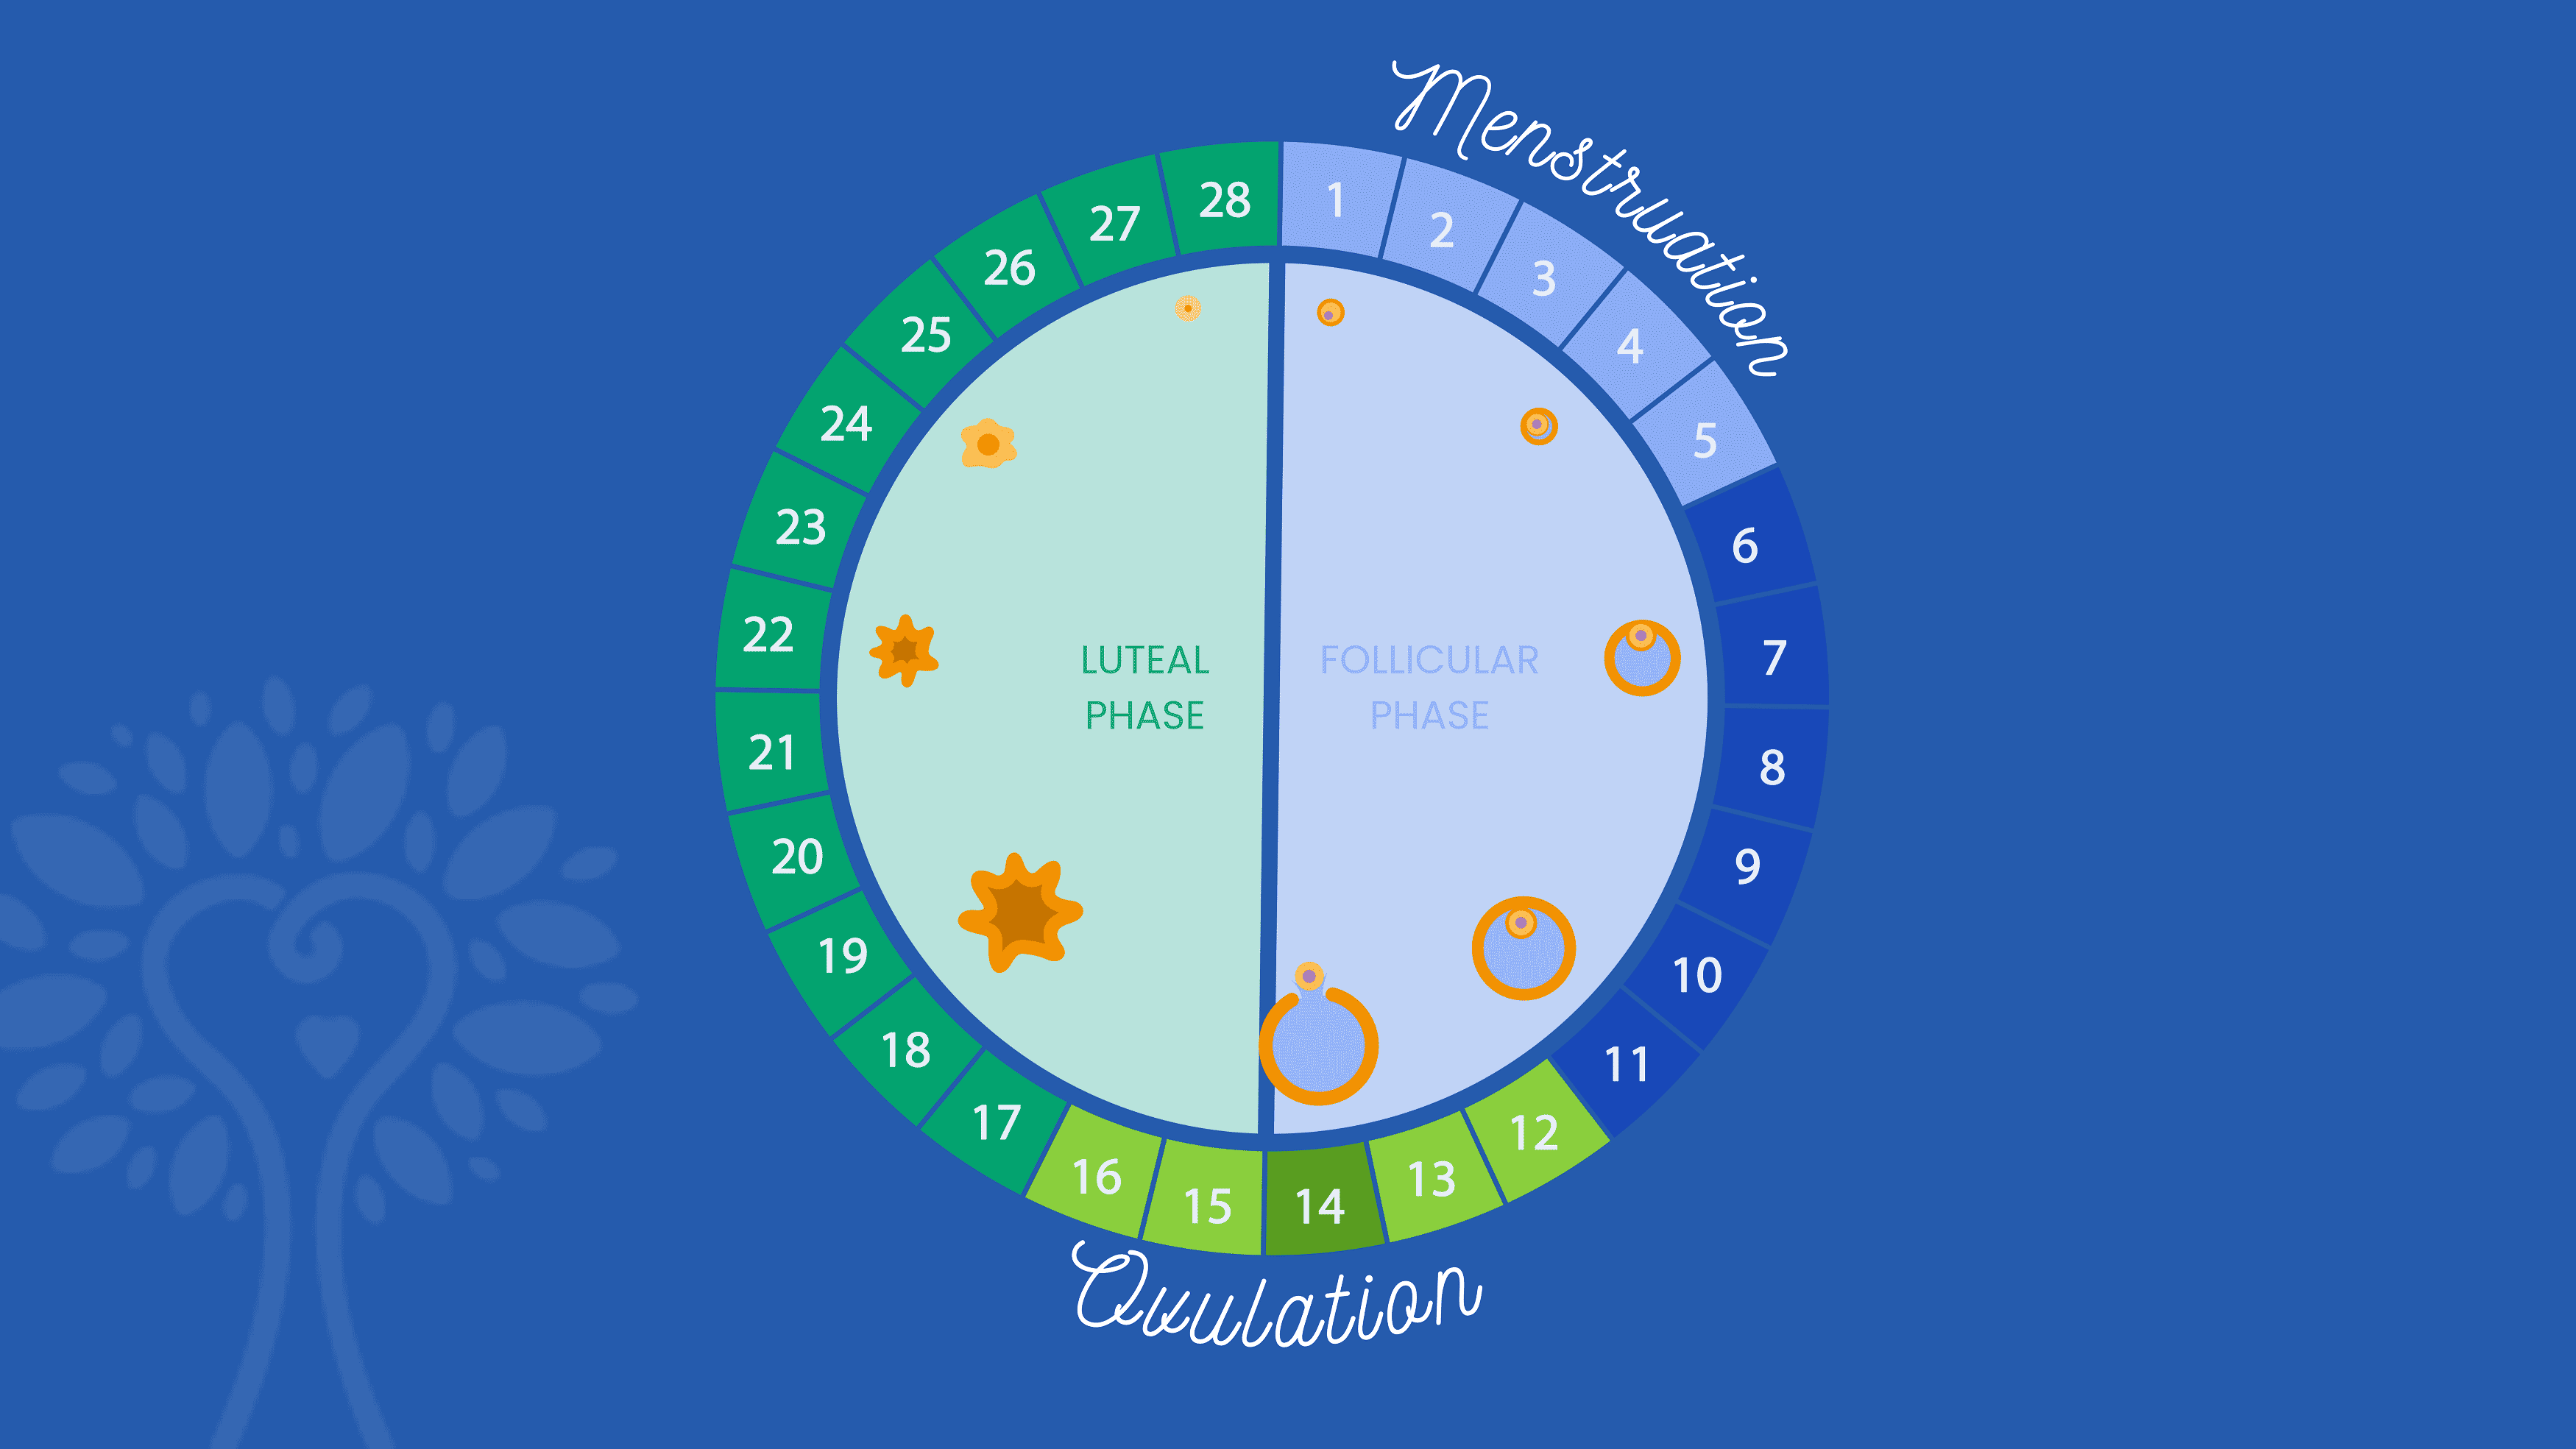 Dunkelblauer Hintergrund mit kreisförmigem IVF-Kalender, der die 28 Tage eines Menstruationszyklus zeigt, mit dem Wort „Menstruation“ für die Tage 1 bis 5 und dem Wort „Ovulation“ für die Tage 12 bis 16. Die Zahlen sind entsprechend in verschiedenen Blau- und Grüntönen gefärbt ihre Phase.